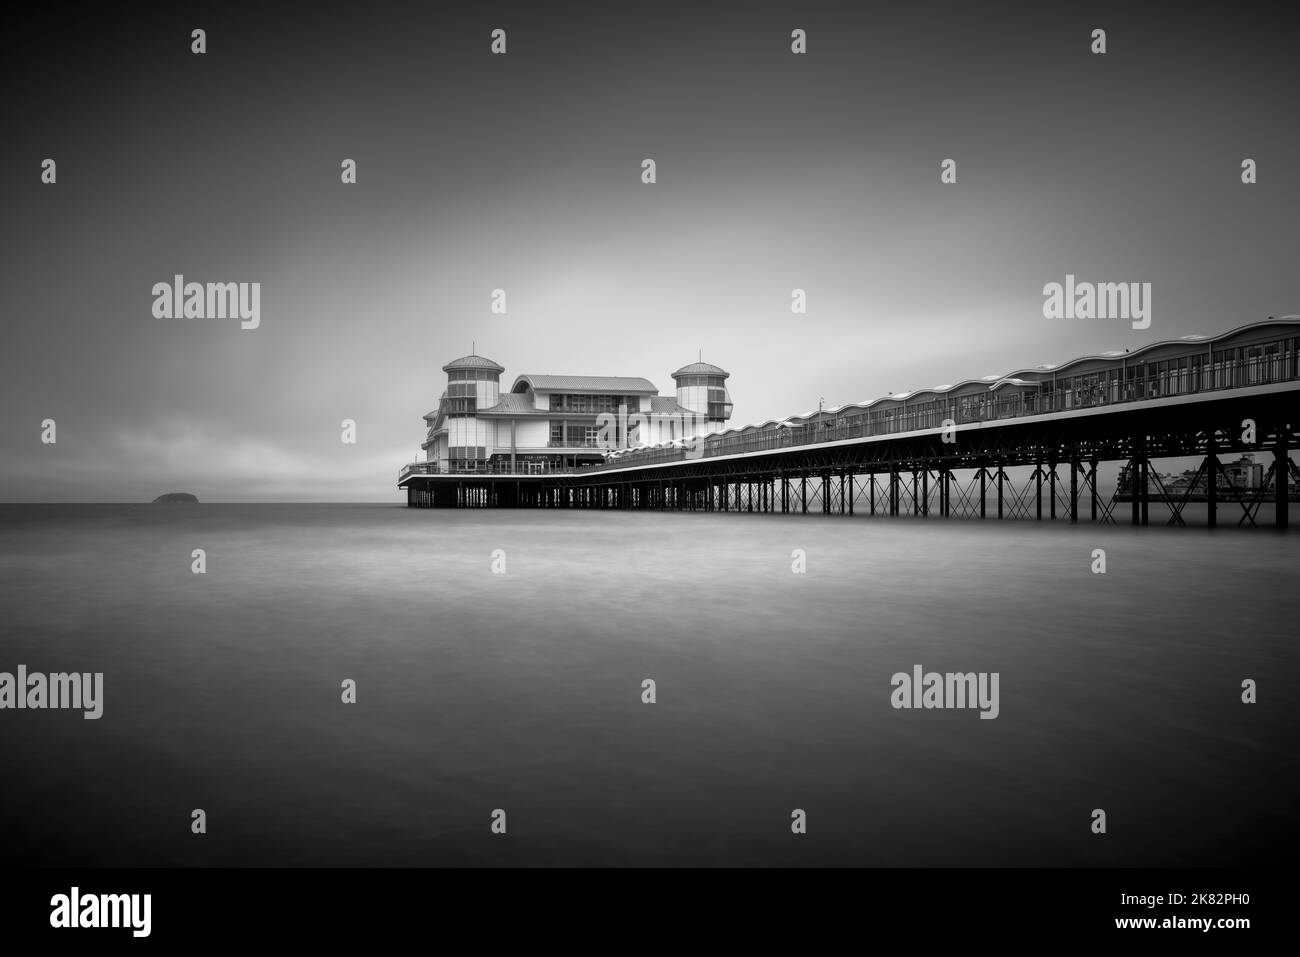 Ein Schwarz-Weiß-Bild des Grand Pier im Bristol Channel bei Weston-super-Mare, North Somerset, England. Stockfoto